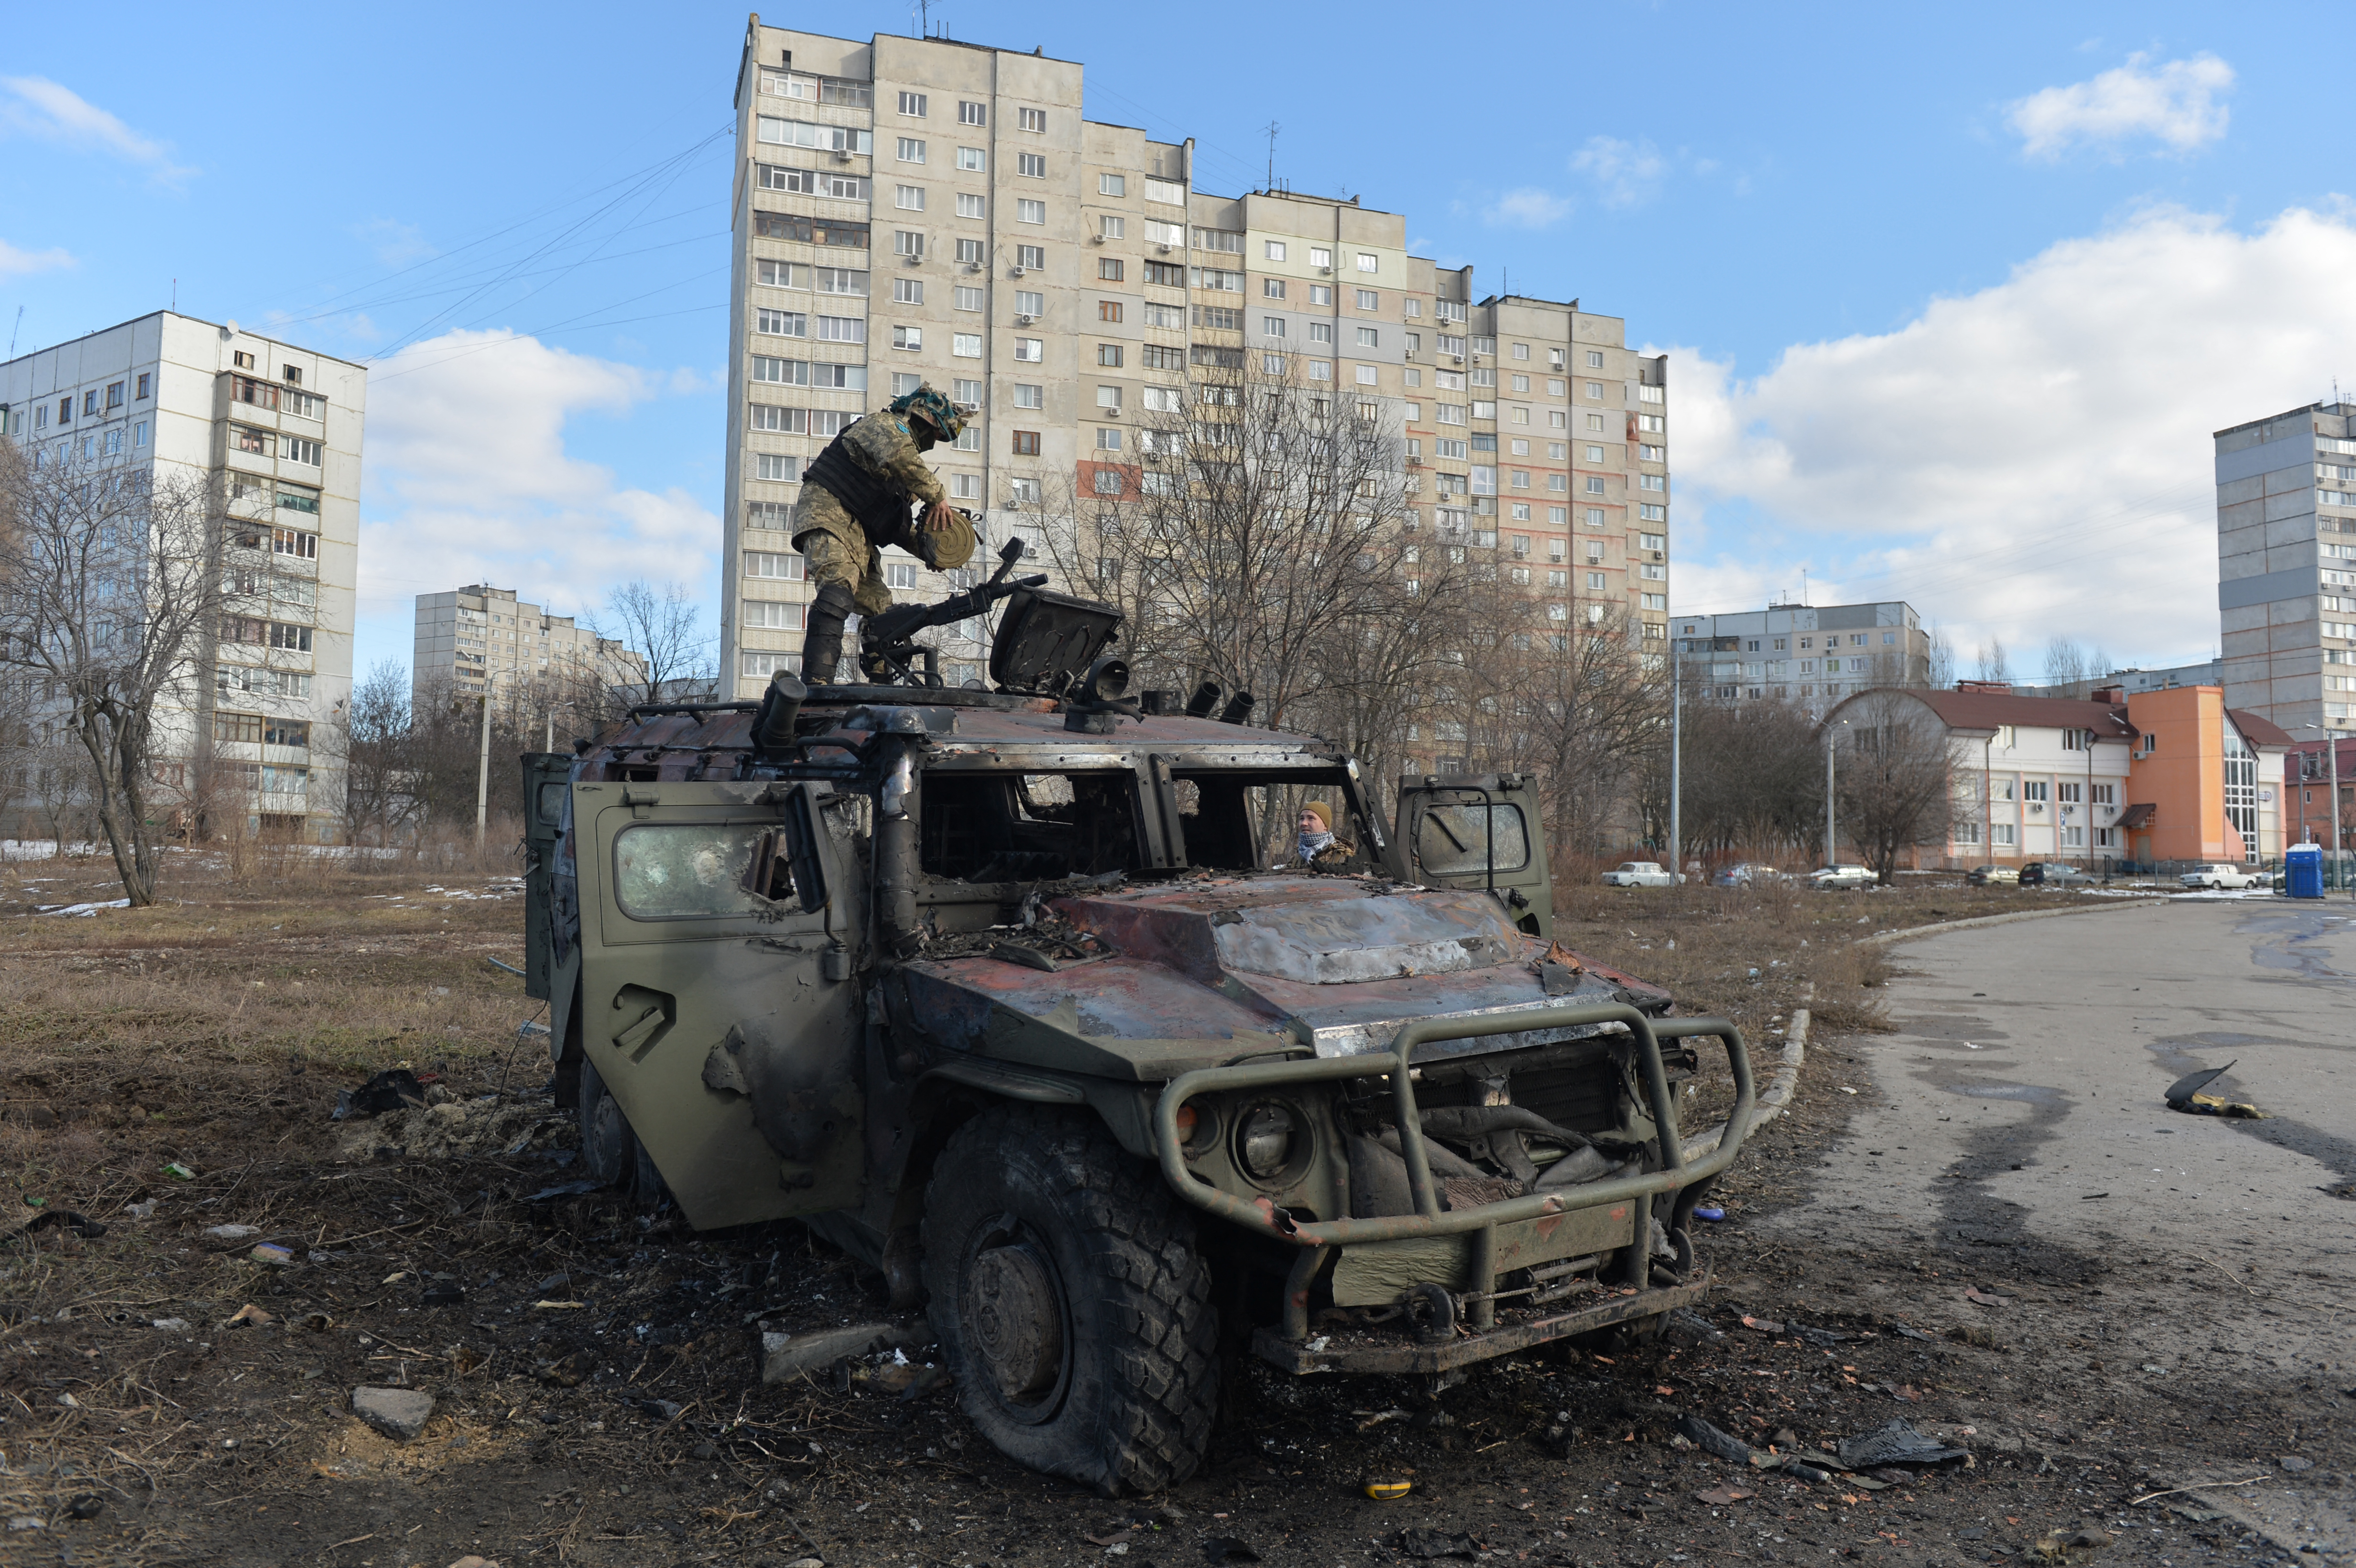 Harkiv az ukrán kultúra központjából lett az Ukrajna jövőjéért folytatott harc egyik fő helyszíne